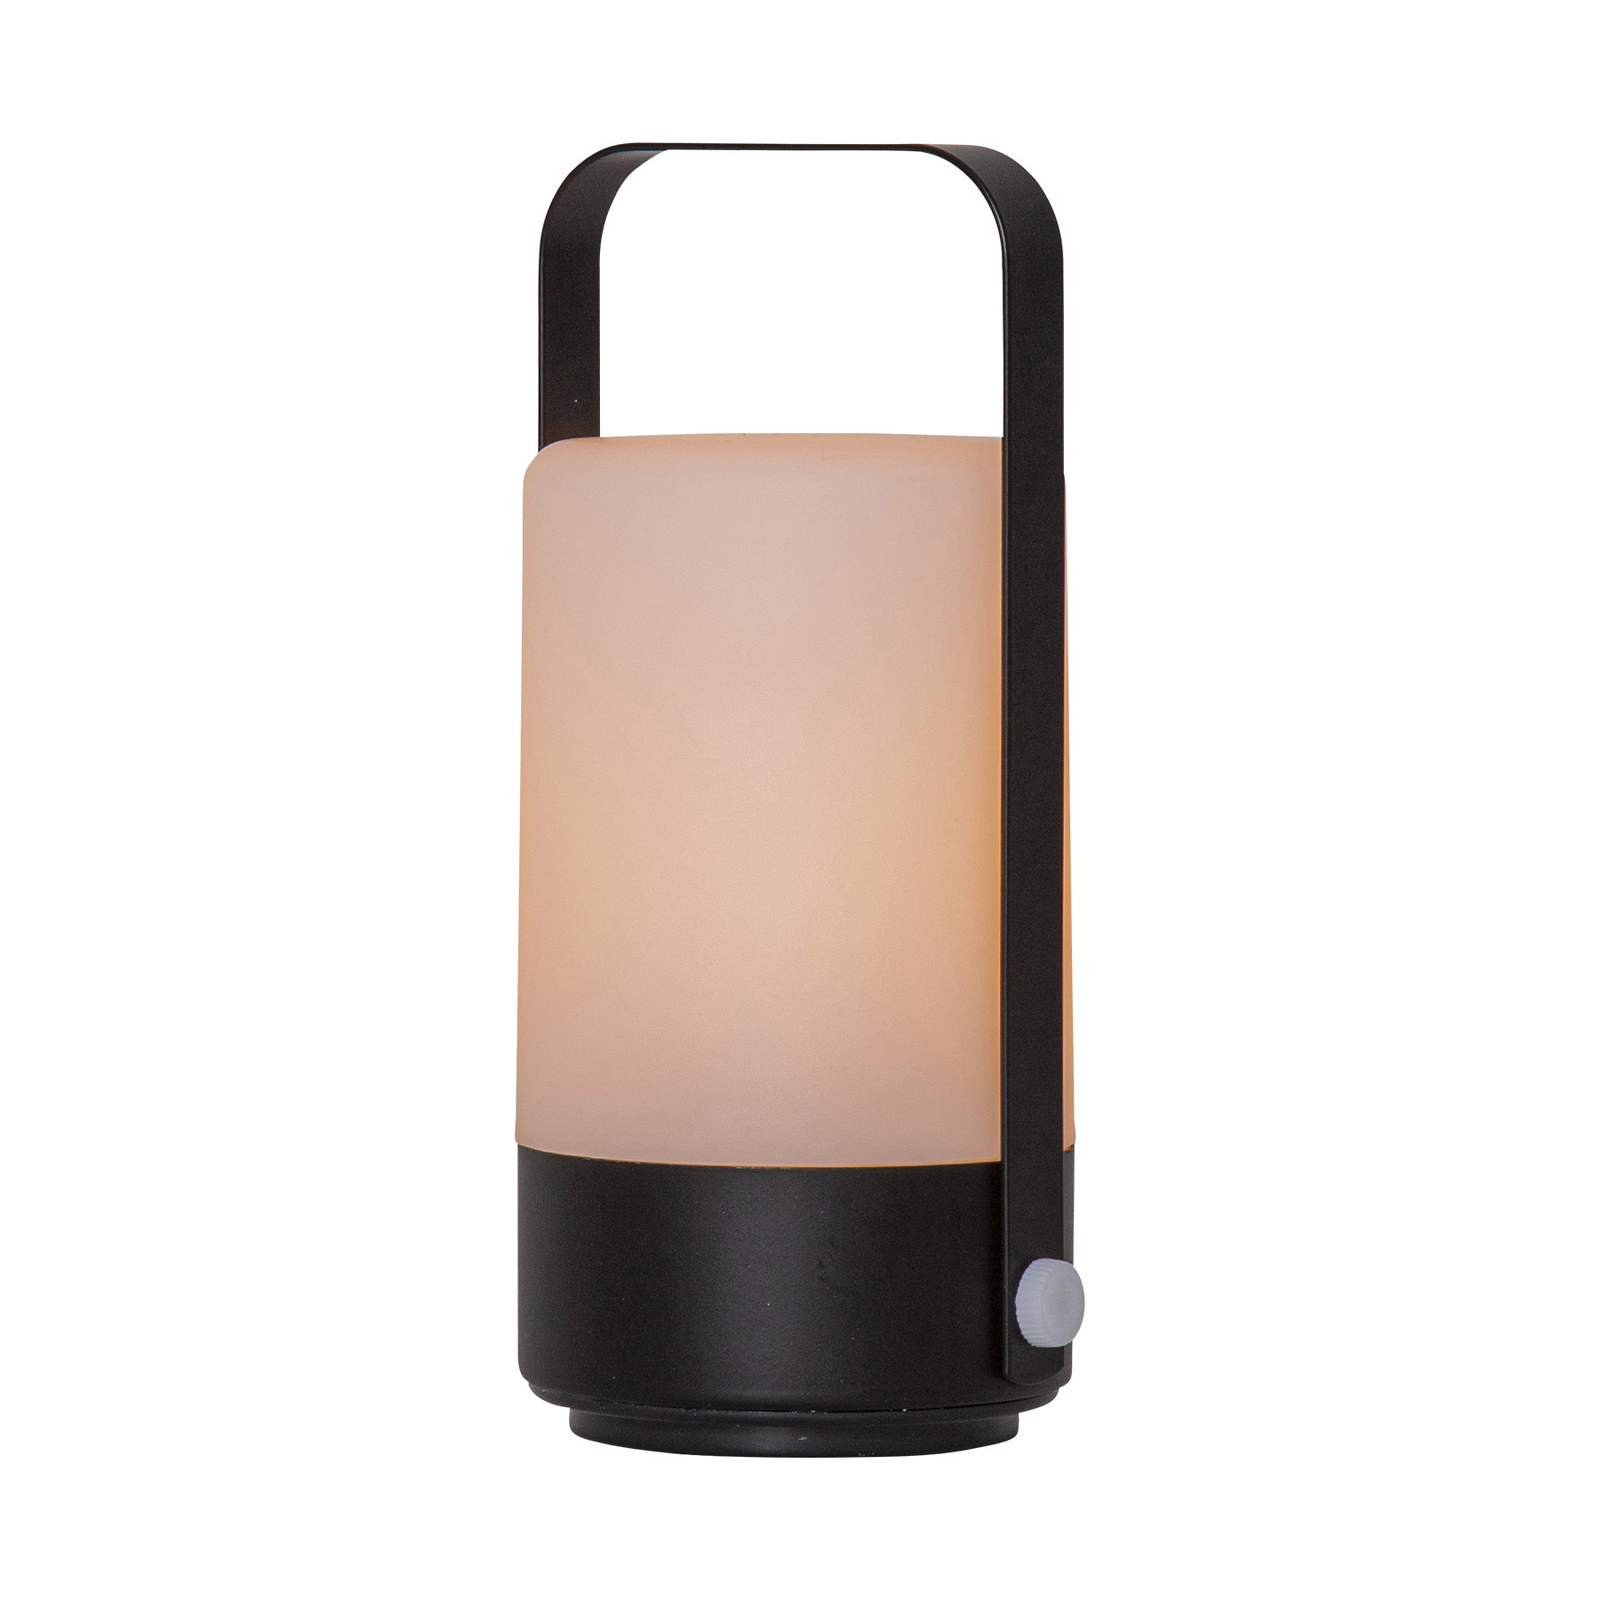 LED tafellamp Flame Lantern, draagbaar, batterij